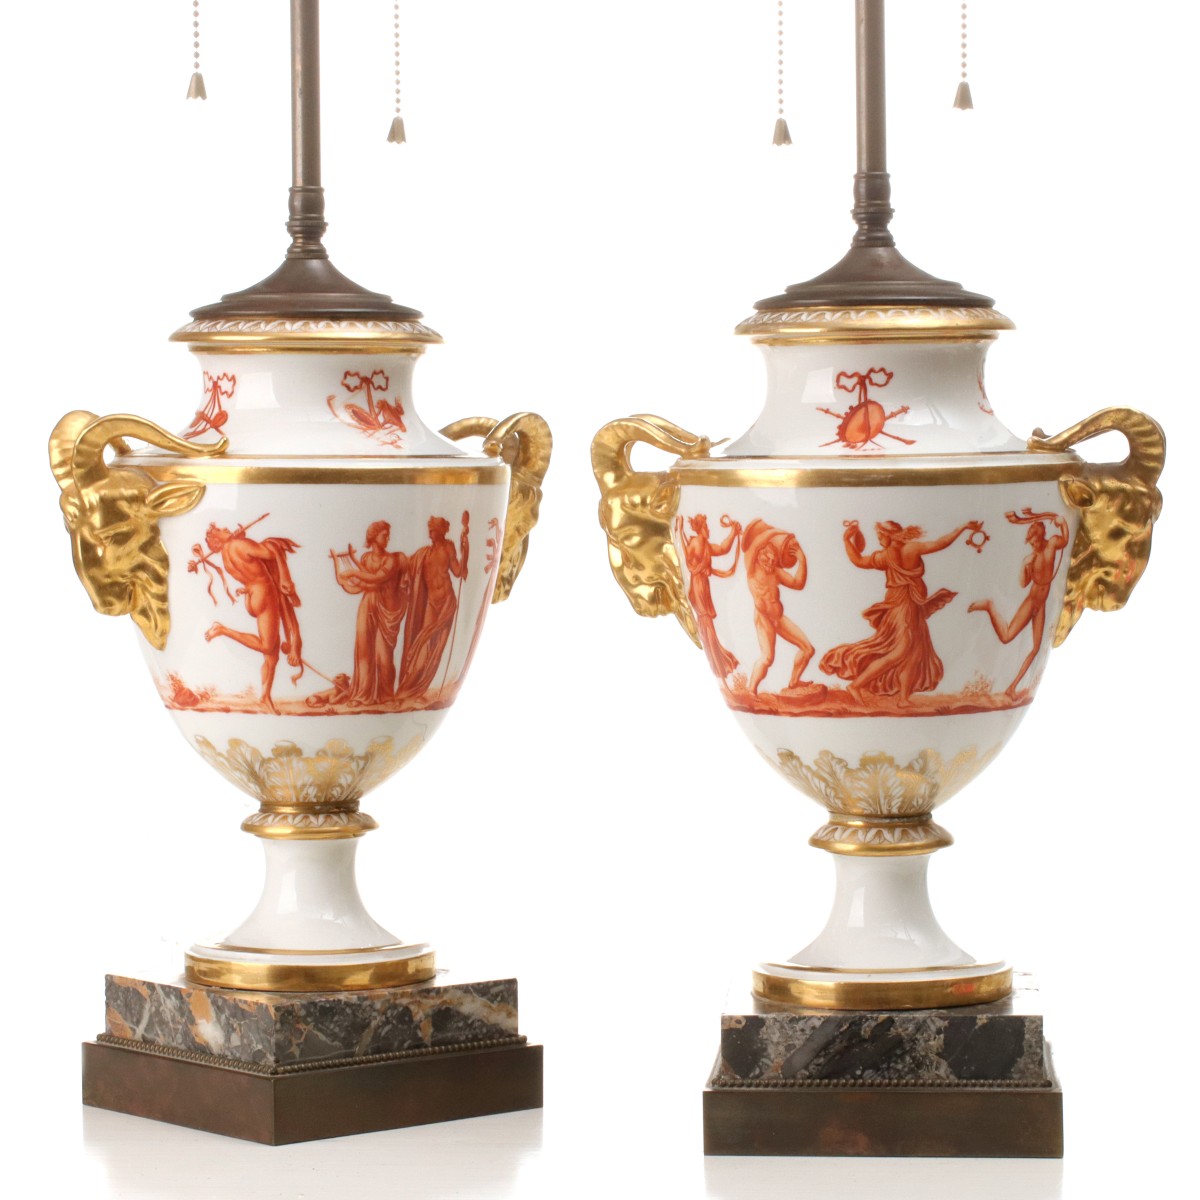 A PAIR OF PARIS PORCELAIN URNS, NOW TABLE LAMPS